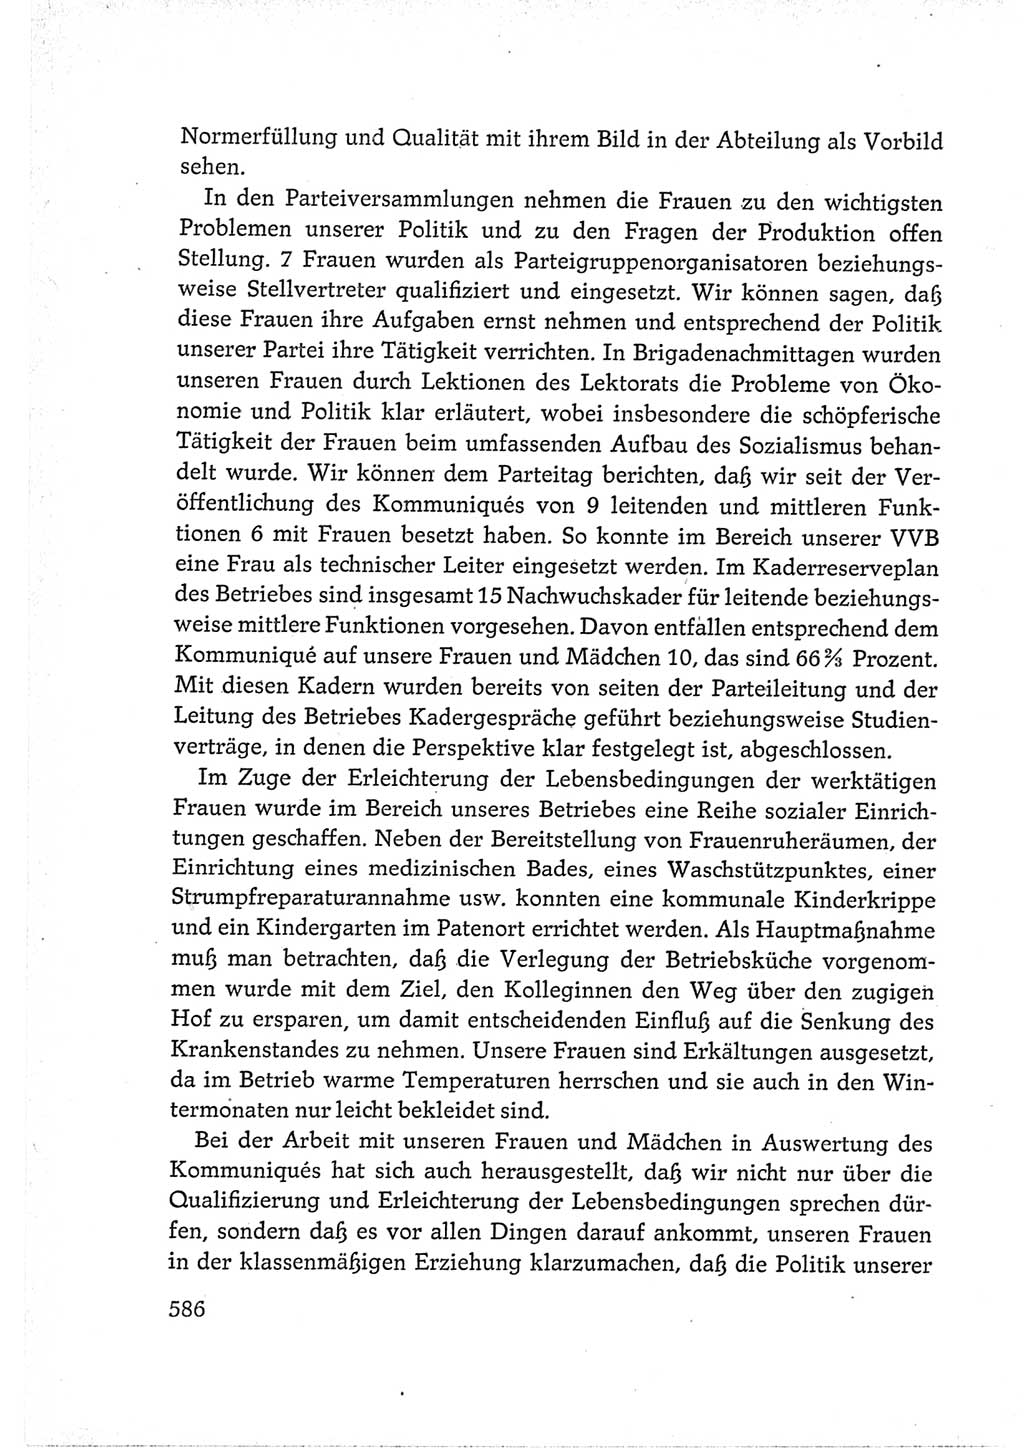 Protokoll der Verhandlungen des Ⅵ. Parteitages der Sozialistischen Einheitspartei Deutschlands (SED) [Deutsche Demokratische Republik (DDR)] 1963, Band Ⅲ, Seite 586 (Prot. Verh. Ⅵ. PT SED DDR 1963, Bd. Ⅲ, S. 586)